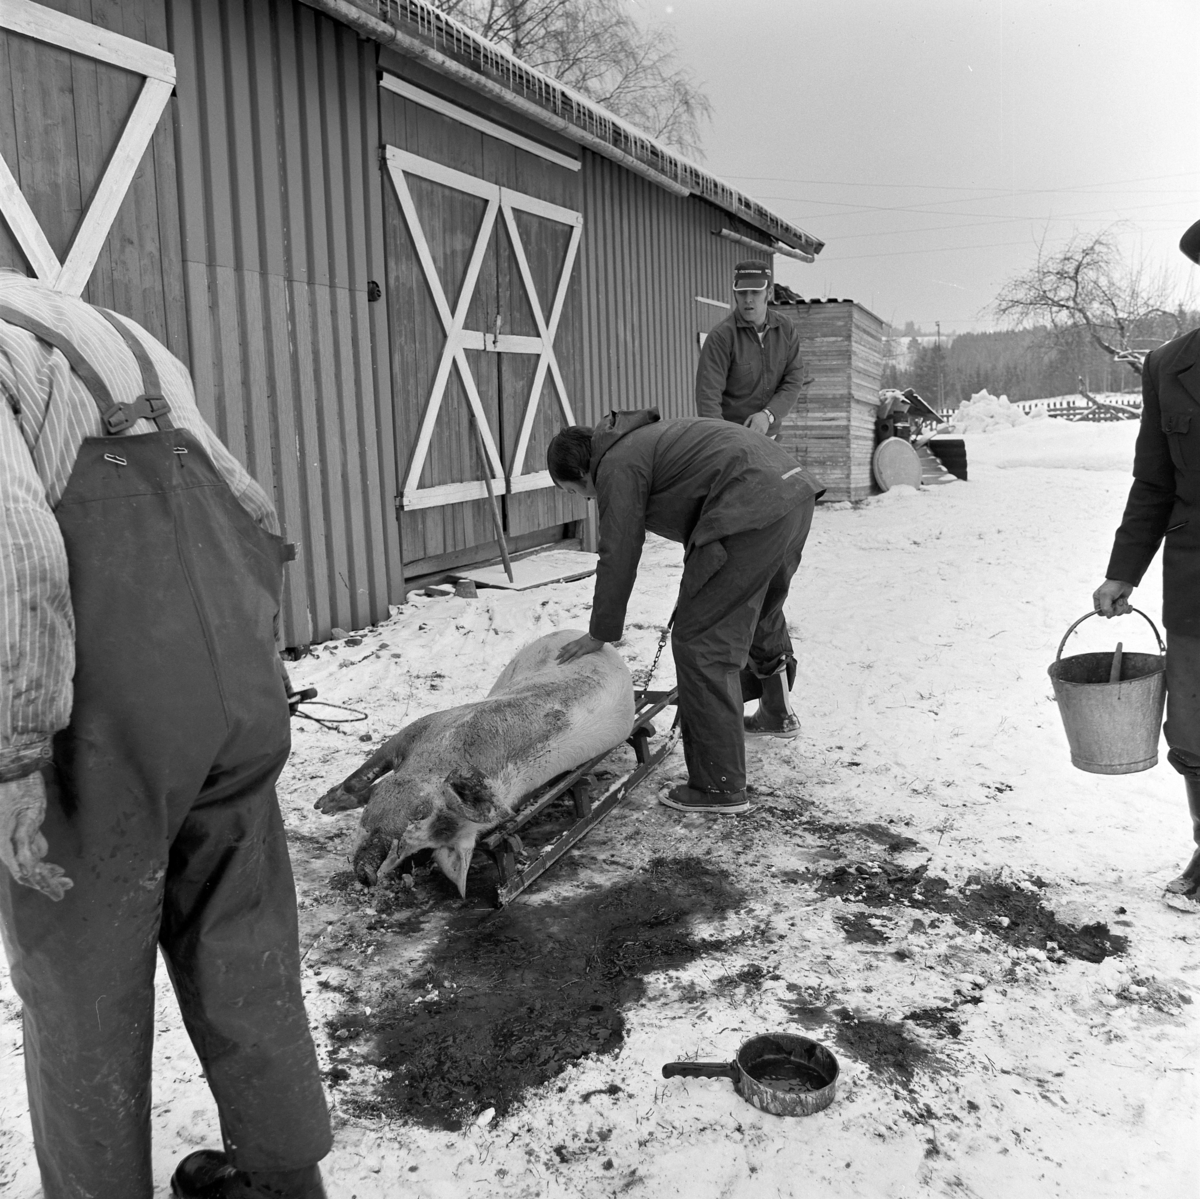 Dokumentasjon av griseslakting i 1977, på Lunde i Gaupen, Ringsaker. Bygdeslakter. Grisen legges på kjelke for å fraktes til slaktebenken.